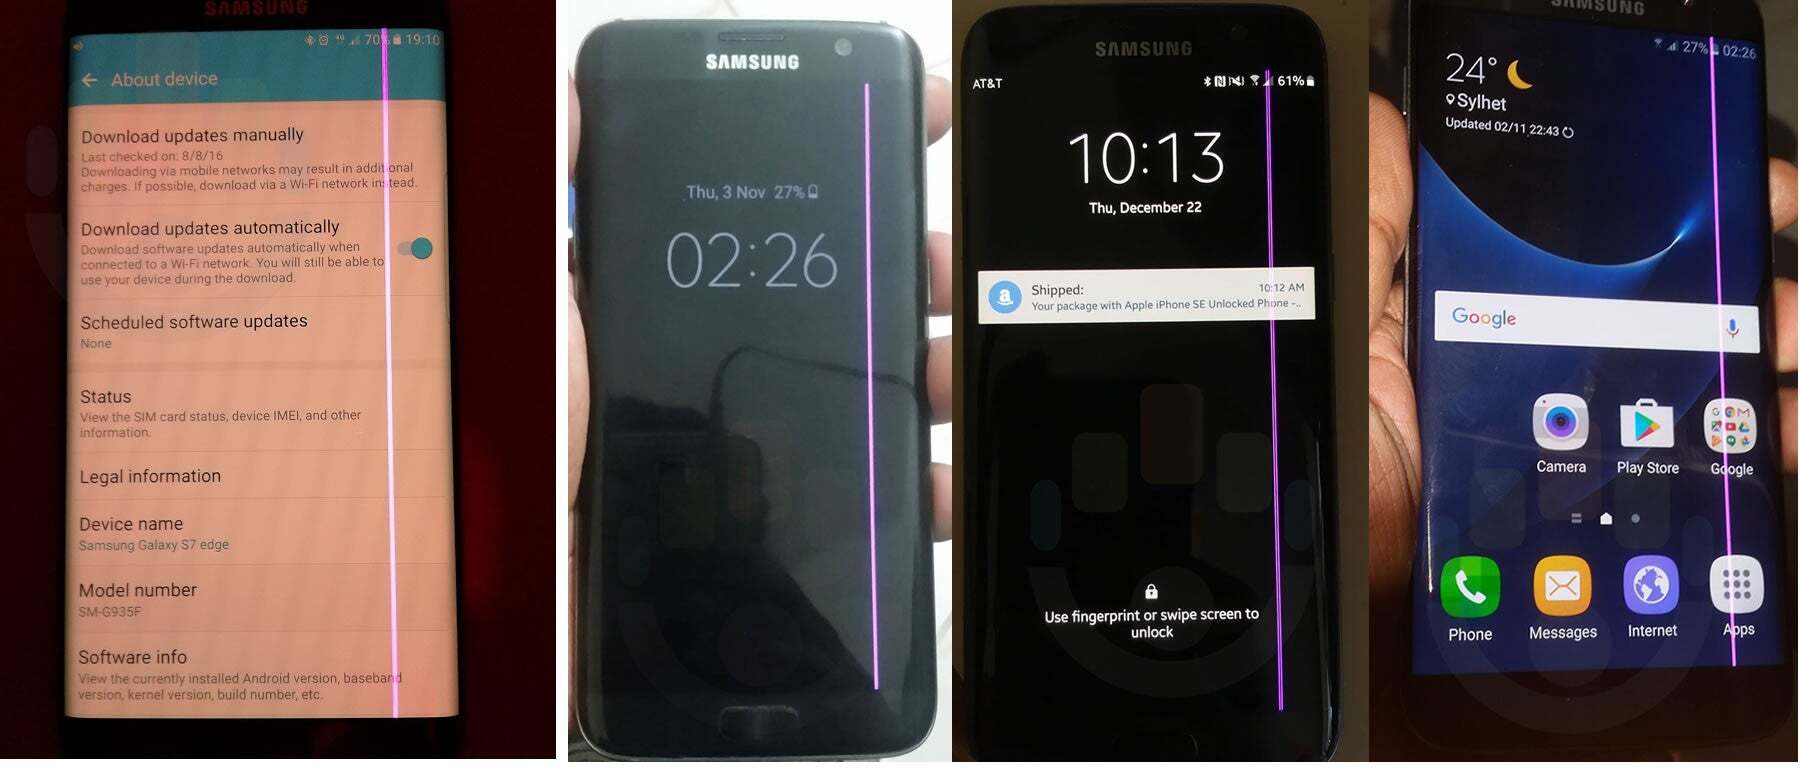 Reddit, Samsung, AT&T ve Vodafone forumlarından etkilenen telefonların fotoğraf karışımı - Yeşil çizgi dehşetini denemek istemiyorsanız uzak durmanız gereken Galaxy telefonları